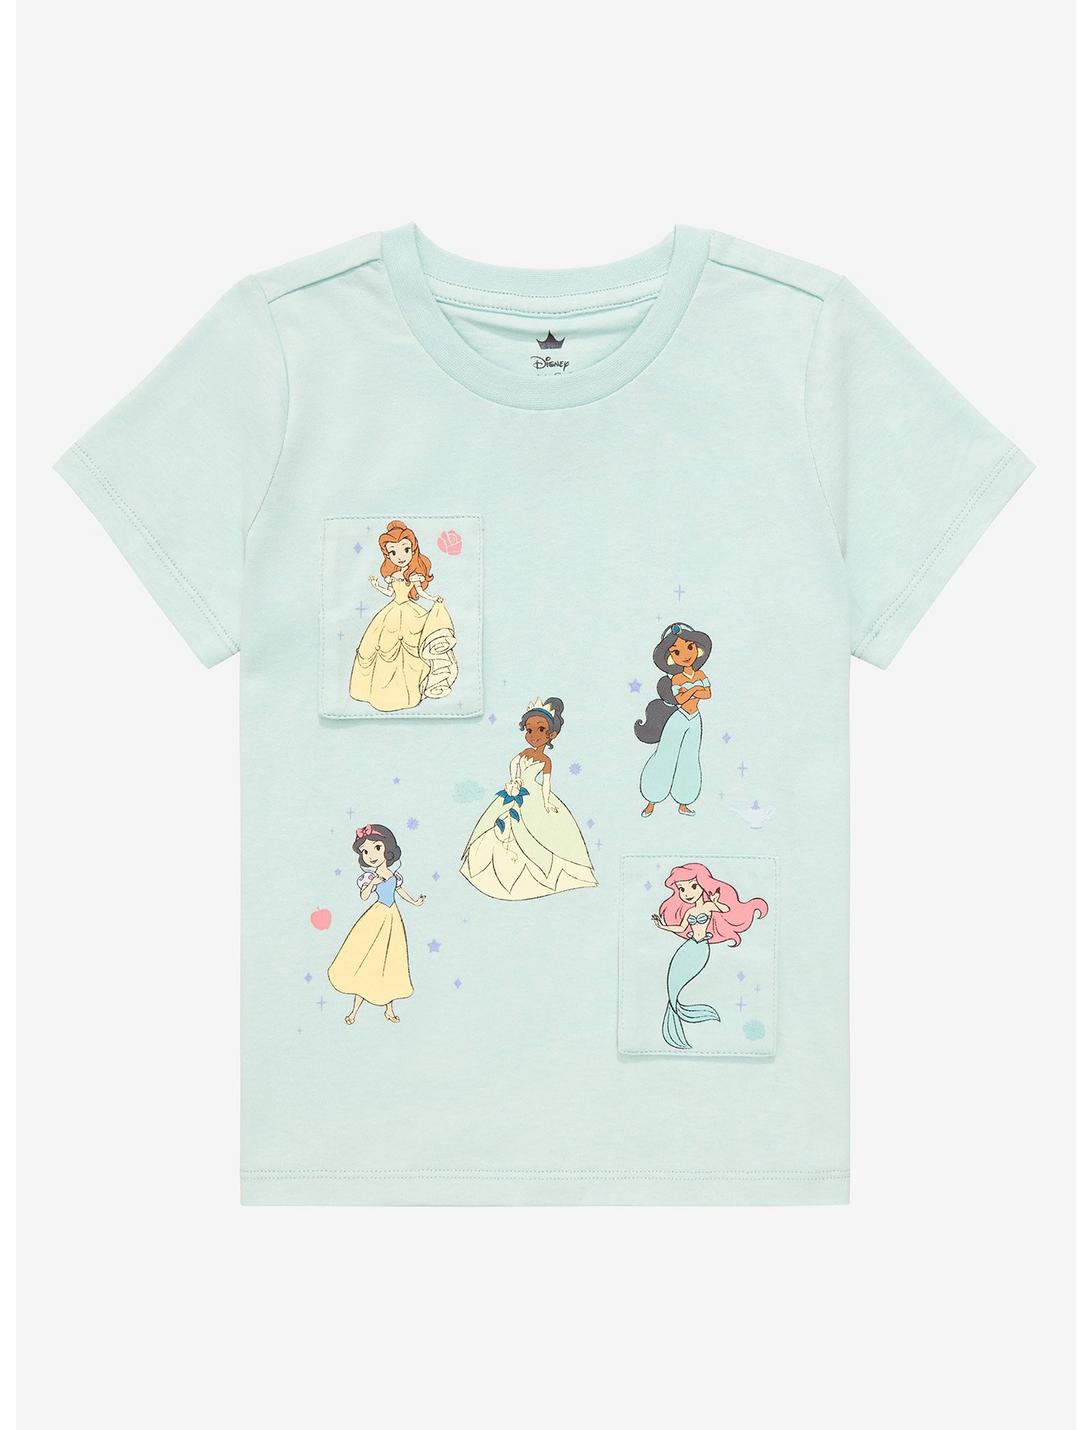 Disney Princess Character Portraits Toddler T-Shirt - BoxLunch Exclusive, AQUA, hi-res